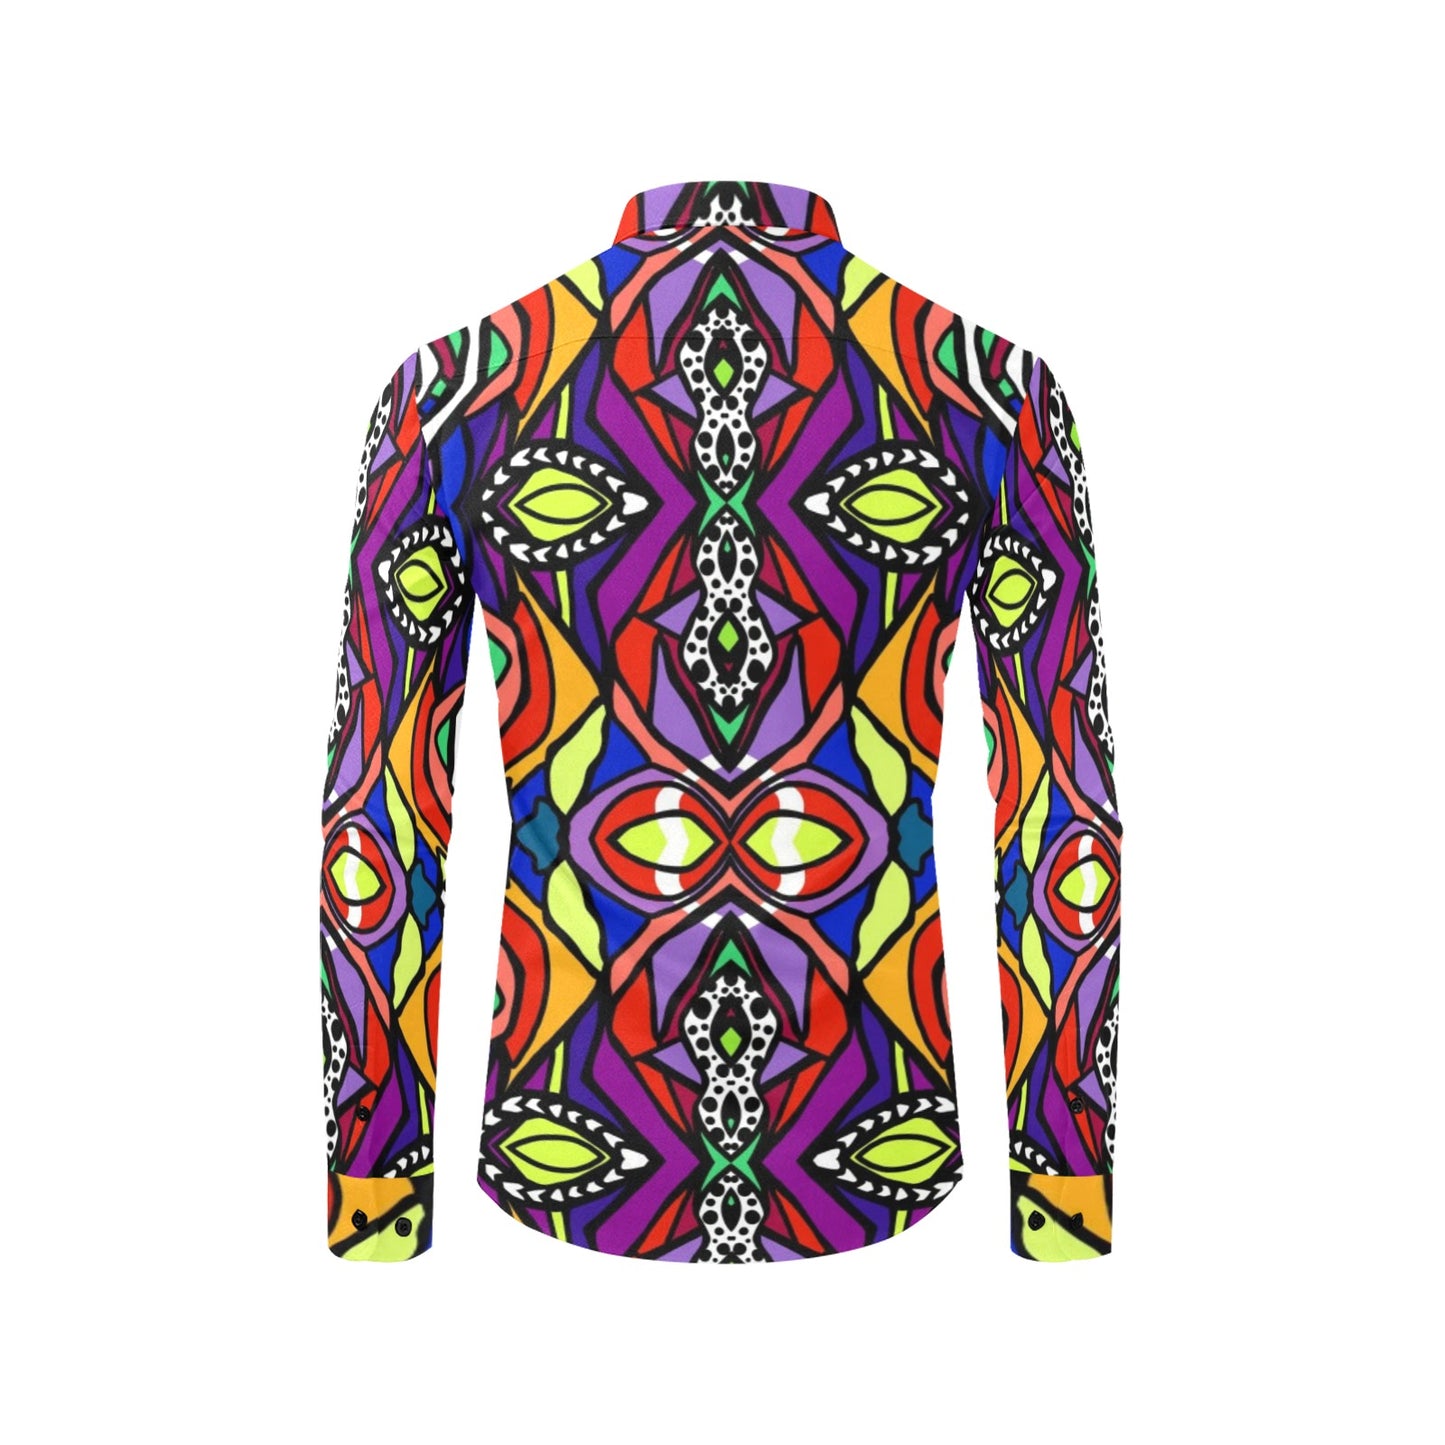 Ulanda- Long Sleeve  Dress Shirt (UNISEX)